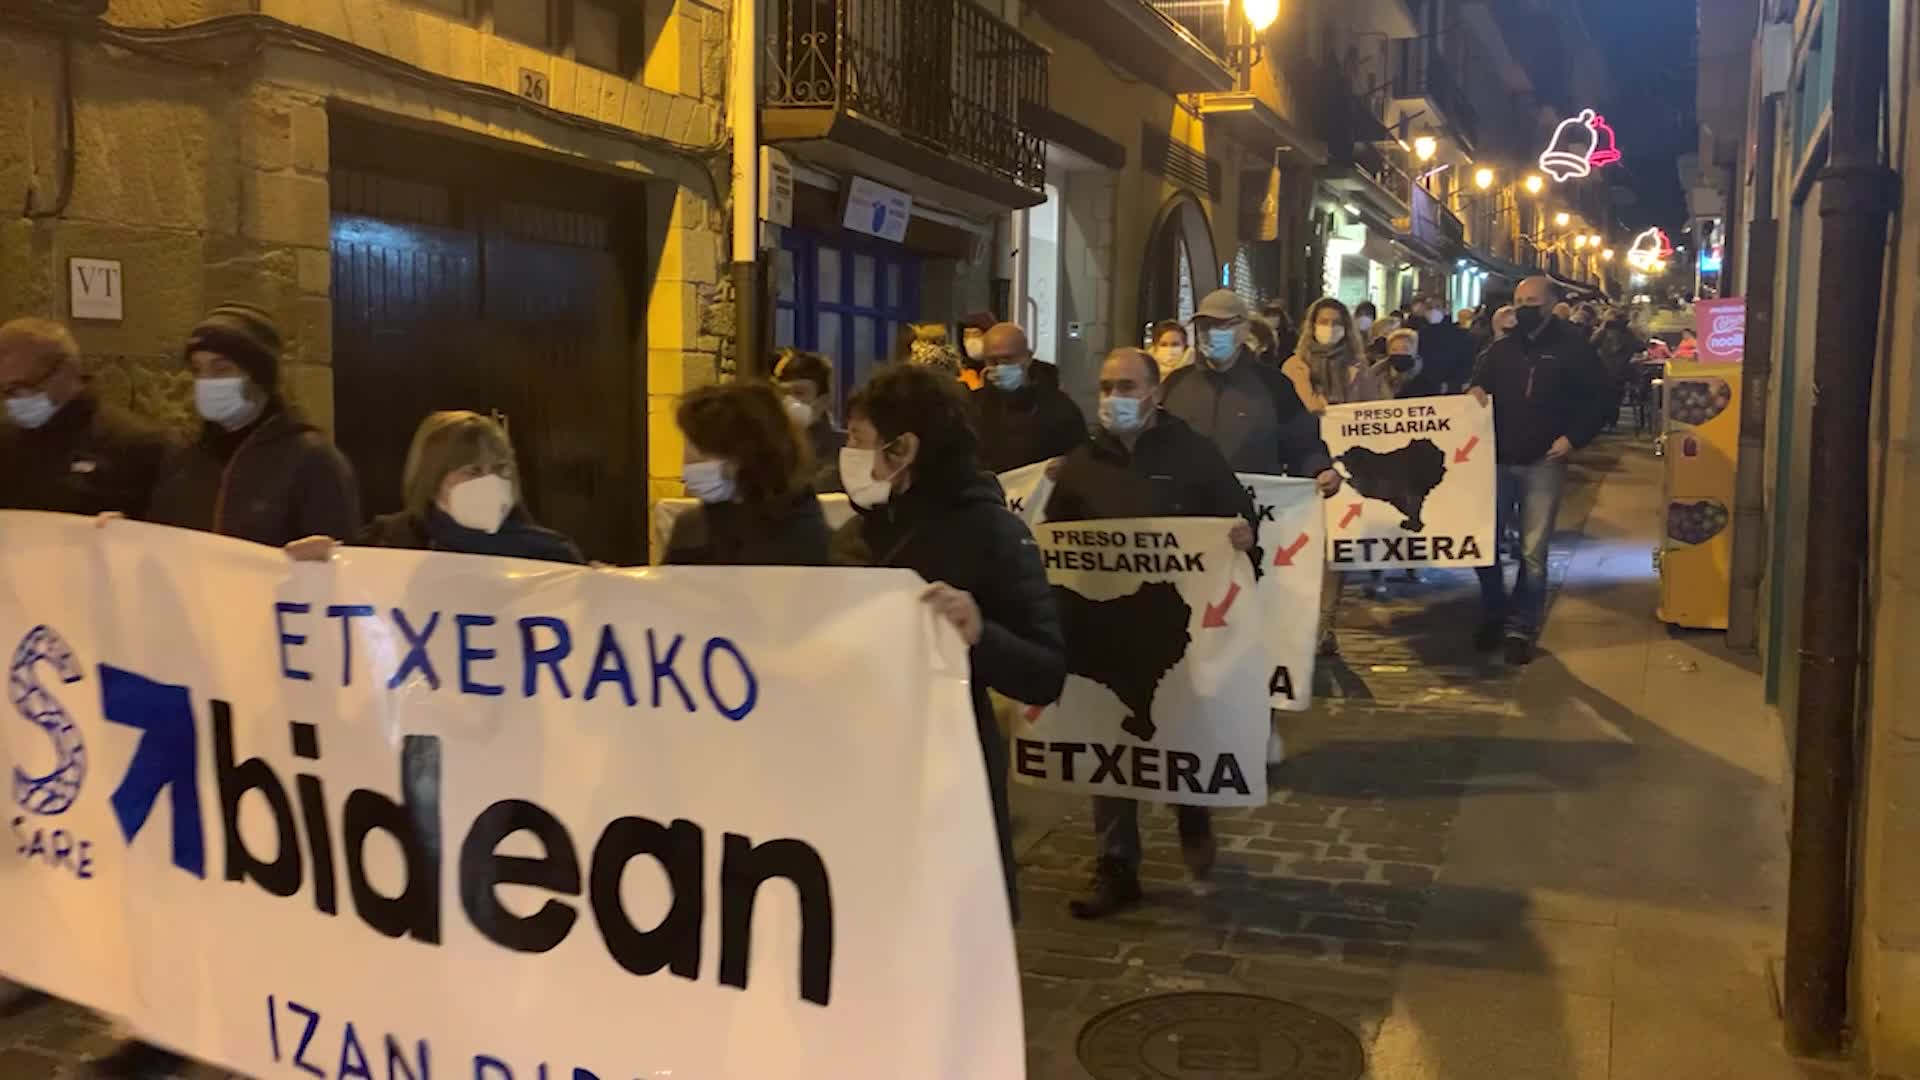 Euskal presoen eskubideak aldarrikatu dituzte eskualdeko herrietan